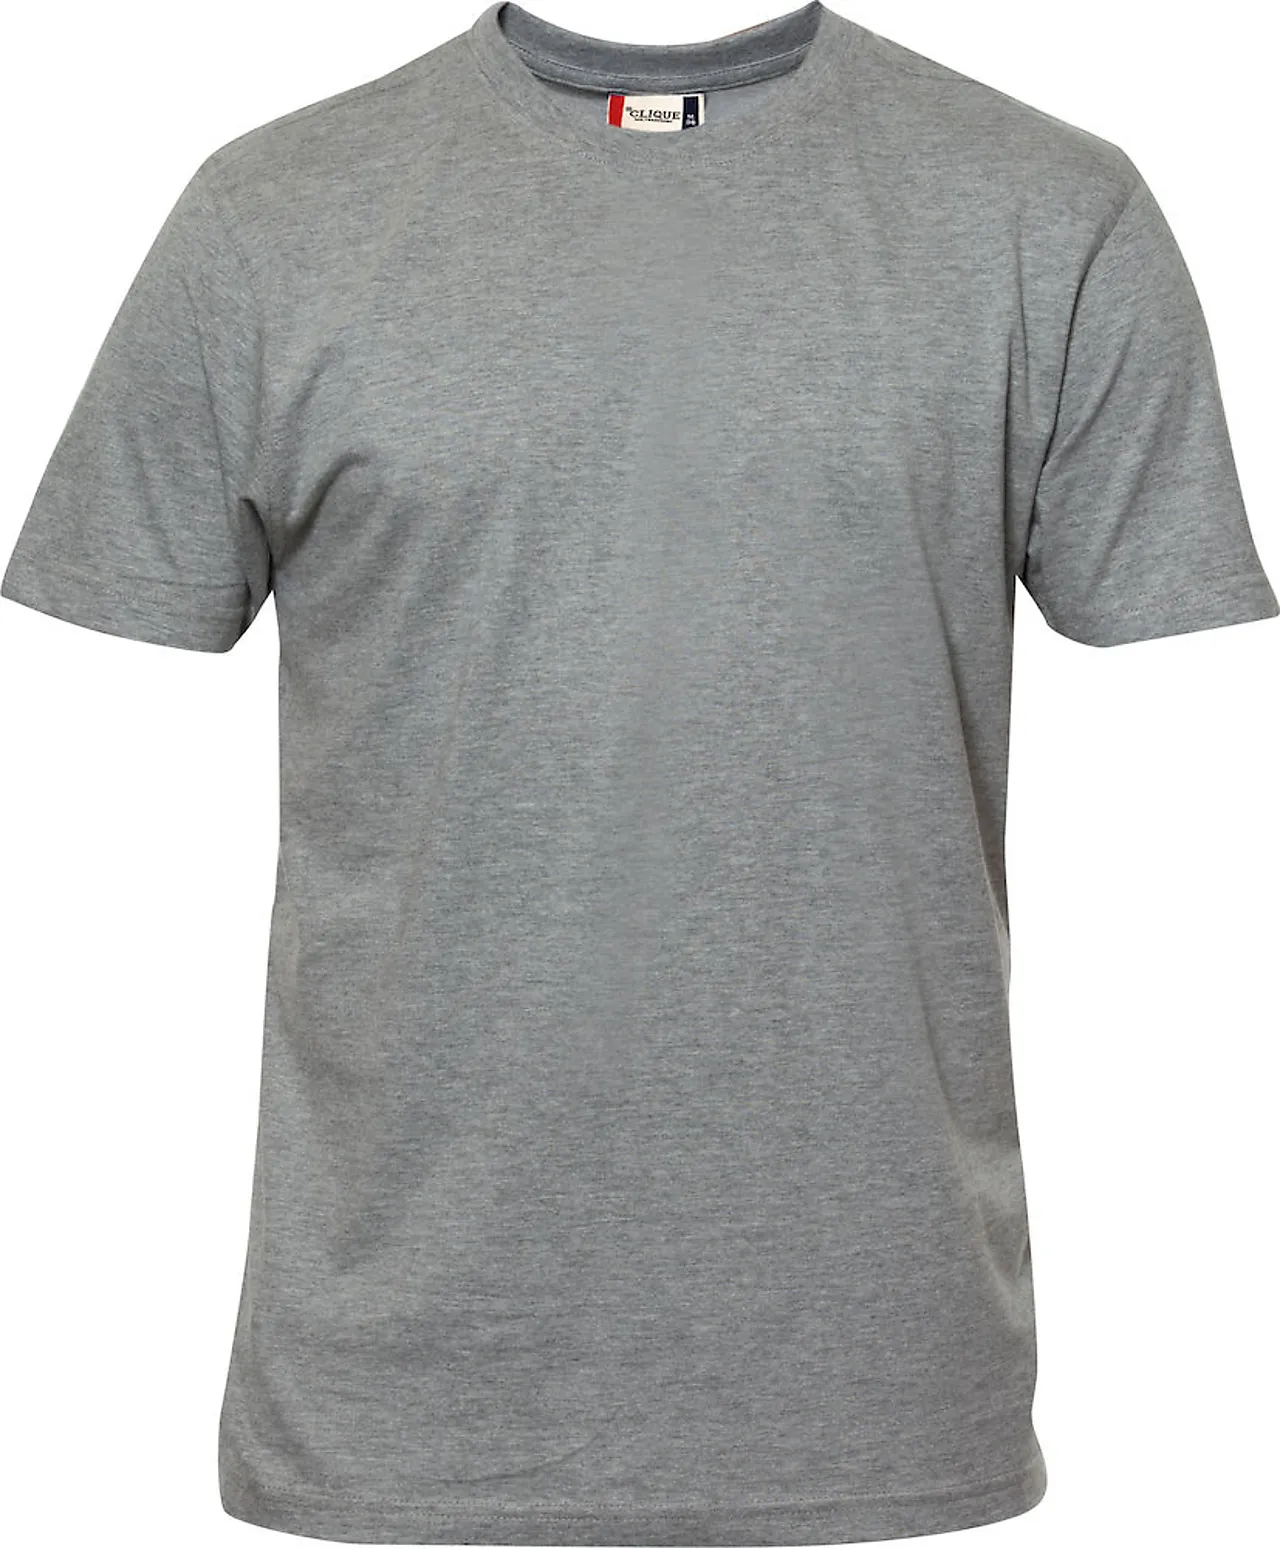 T-skjorte premium 029340 grå xxl